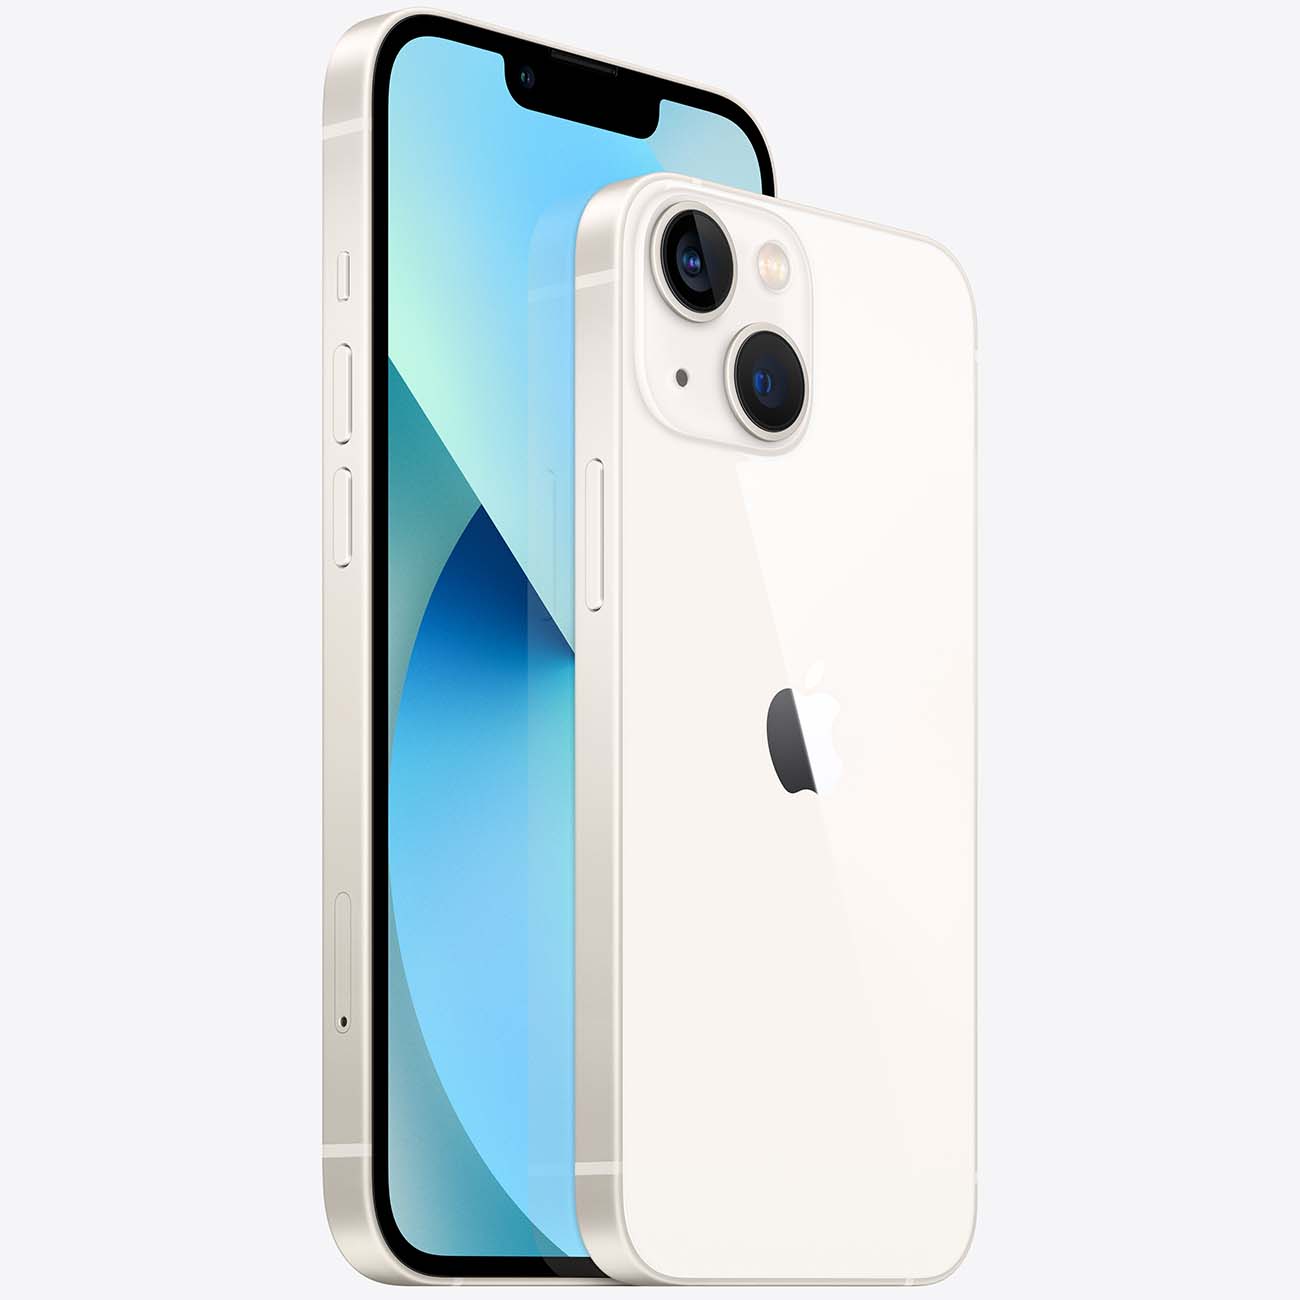 Купить смартфон apple iphone 13 mini 128gb starlight Apple iPhone 13 mini в официальном магазине Apple, Samsung, Xiaomi. iPixel.ru Купить, заказ, кредит, рассрочка, отзывы,  характеристики, цена,  фотографии, в подарок.